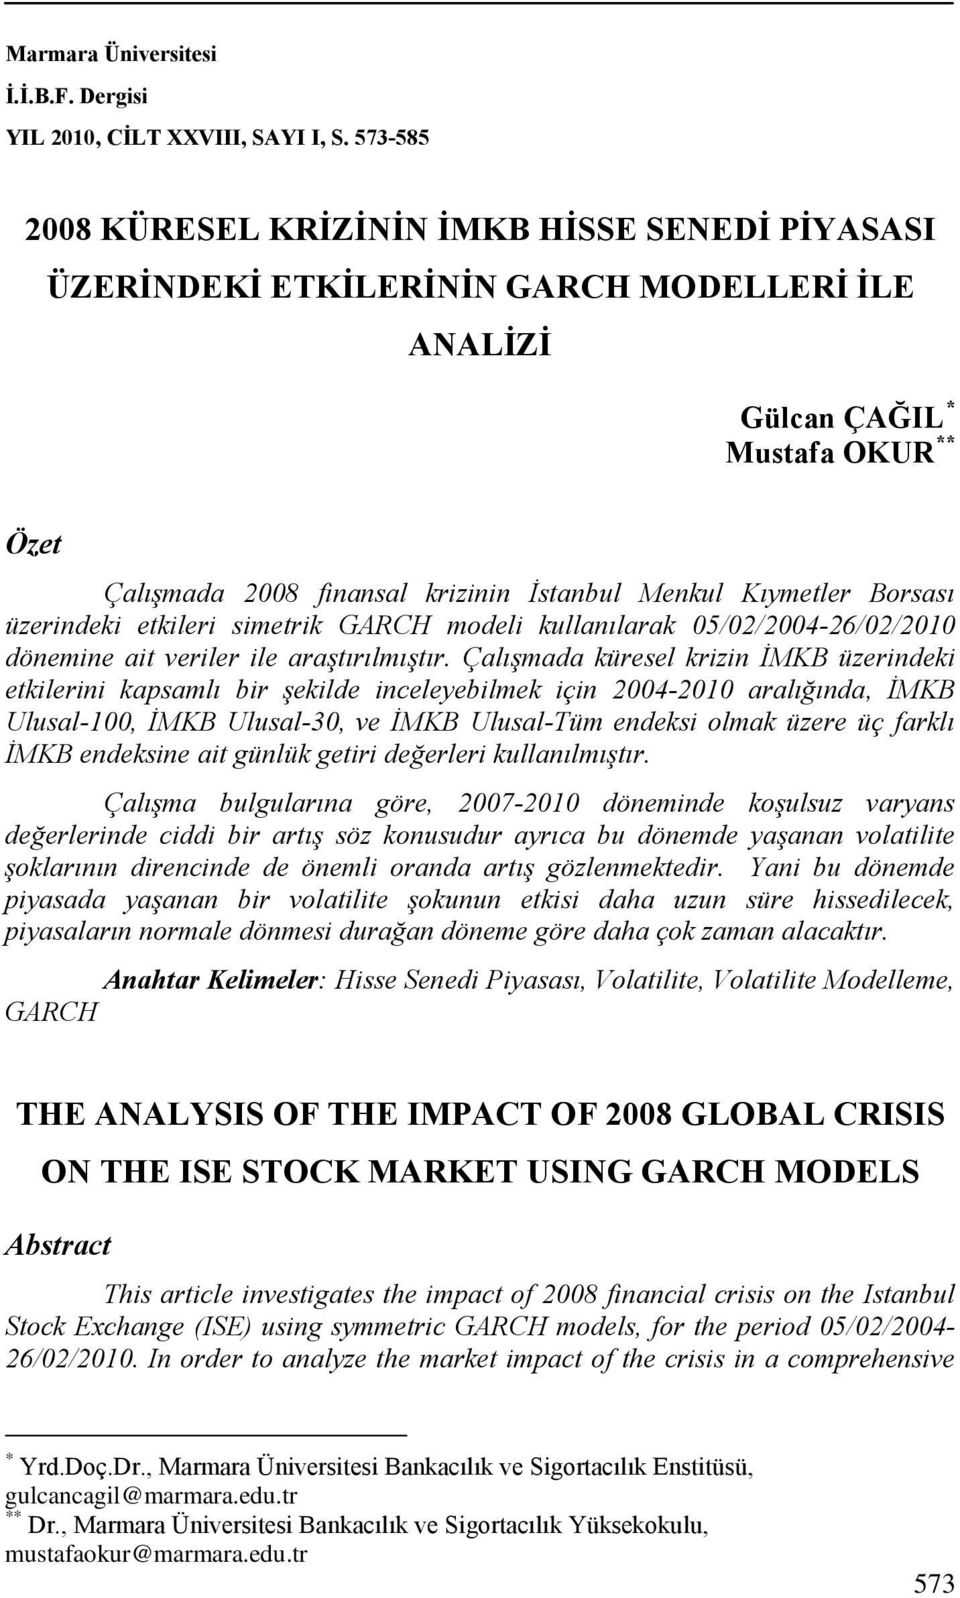 Kıymetler Borsası üzerindeki etkileri simetrik GARCH modeli kullanılarak 05/02/200426/02/2010 dönemine ait veriler ile araştırılmıştır.